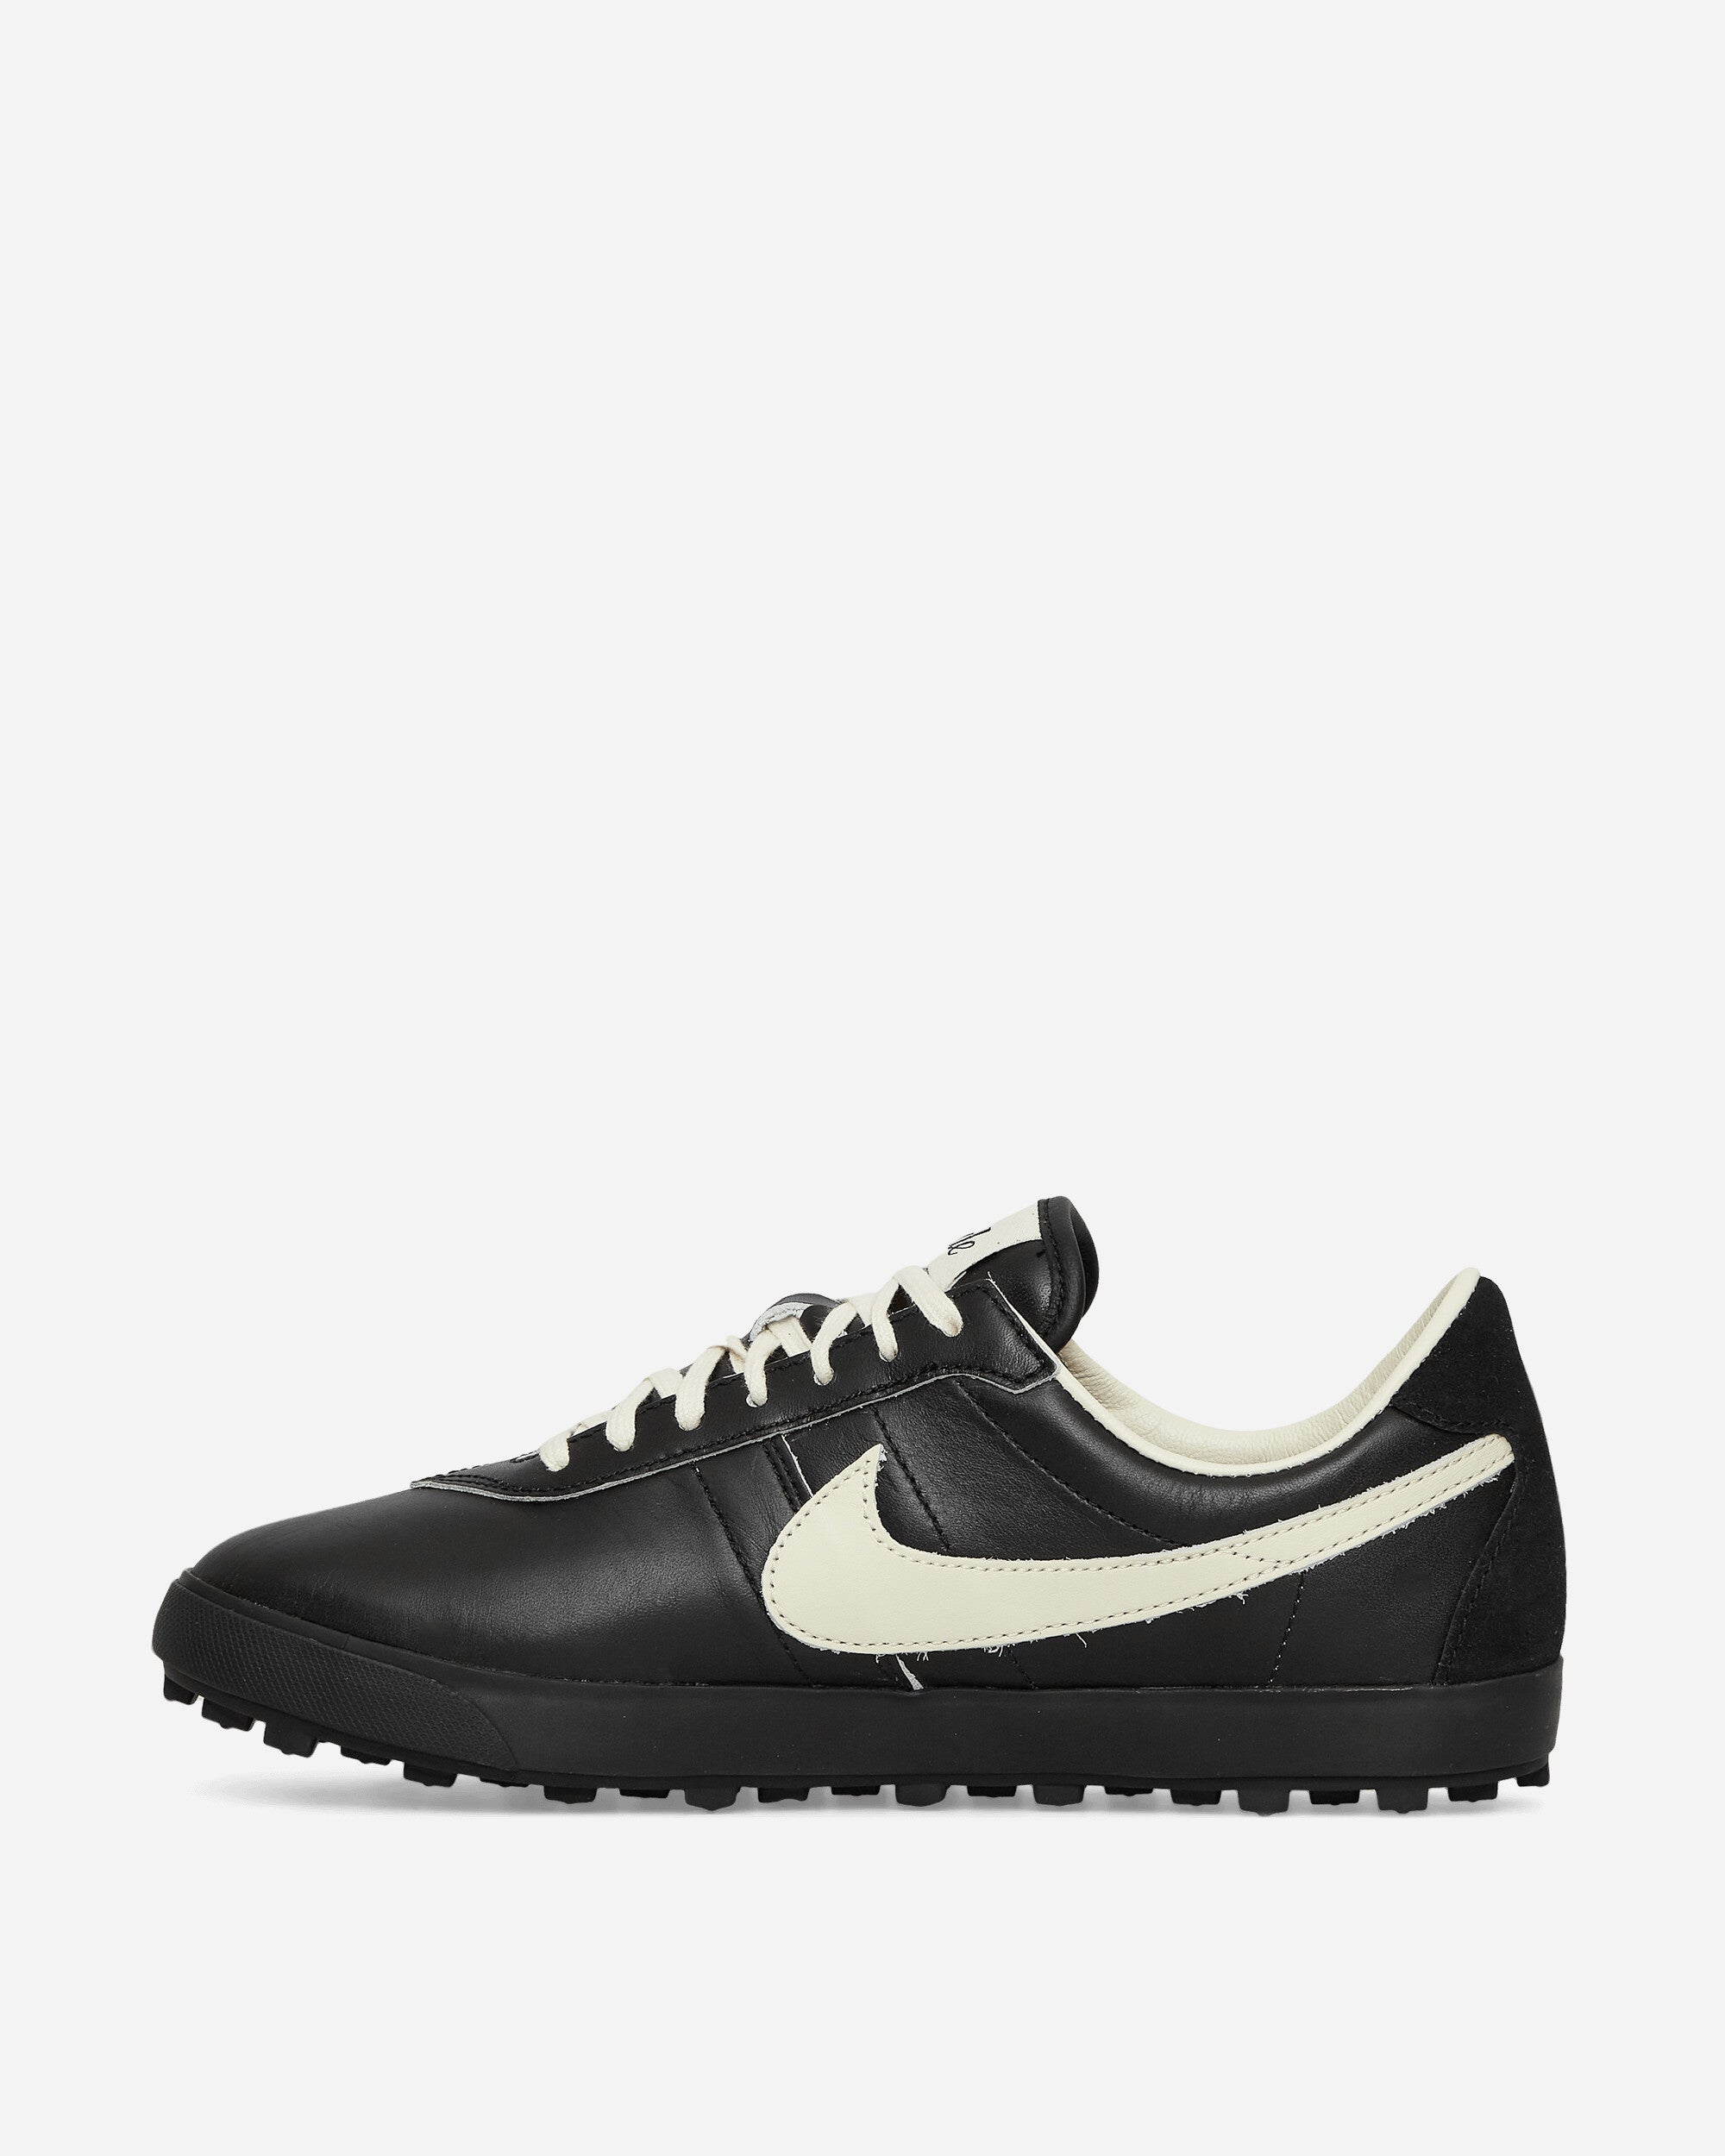 Nike Nike Astrograbber Sp Bode Black/Coconut Milk Sneakers Low FJ9821-001